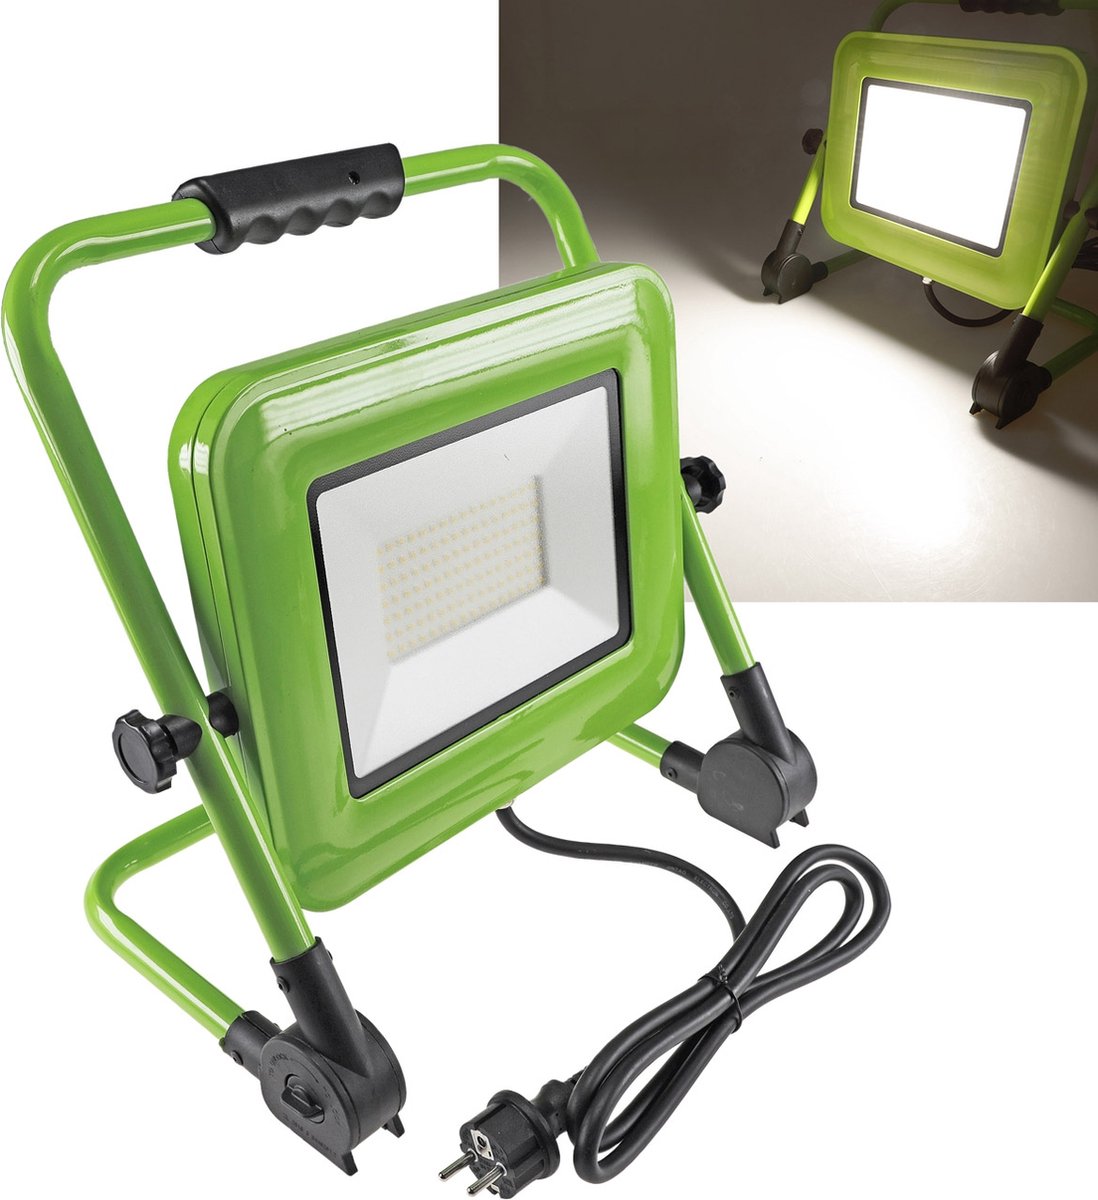 Chilitec LED bouwspot bouwlamp 100W met IP44 waterbestendigheid | Geschikt voor binnen en buiten | 4000K | 120 graden kantelbaar | met draaghendel | draagbaar | groen | opvouwbaar | inklapbaar | wit licht | licht voor werkplaats of bouwplaats